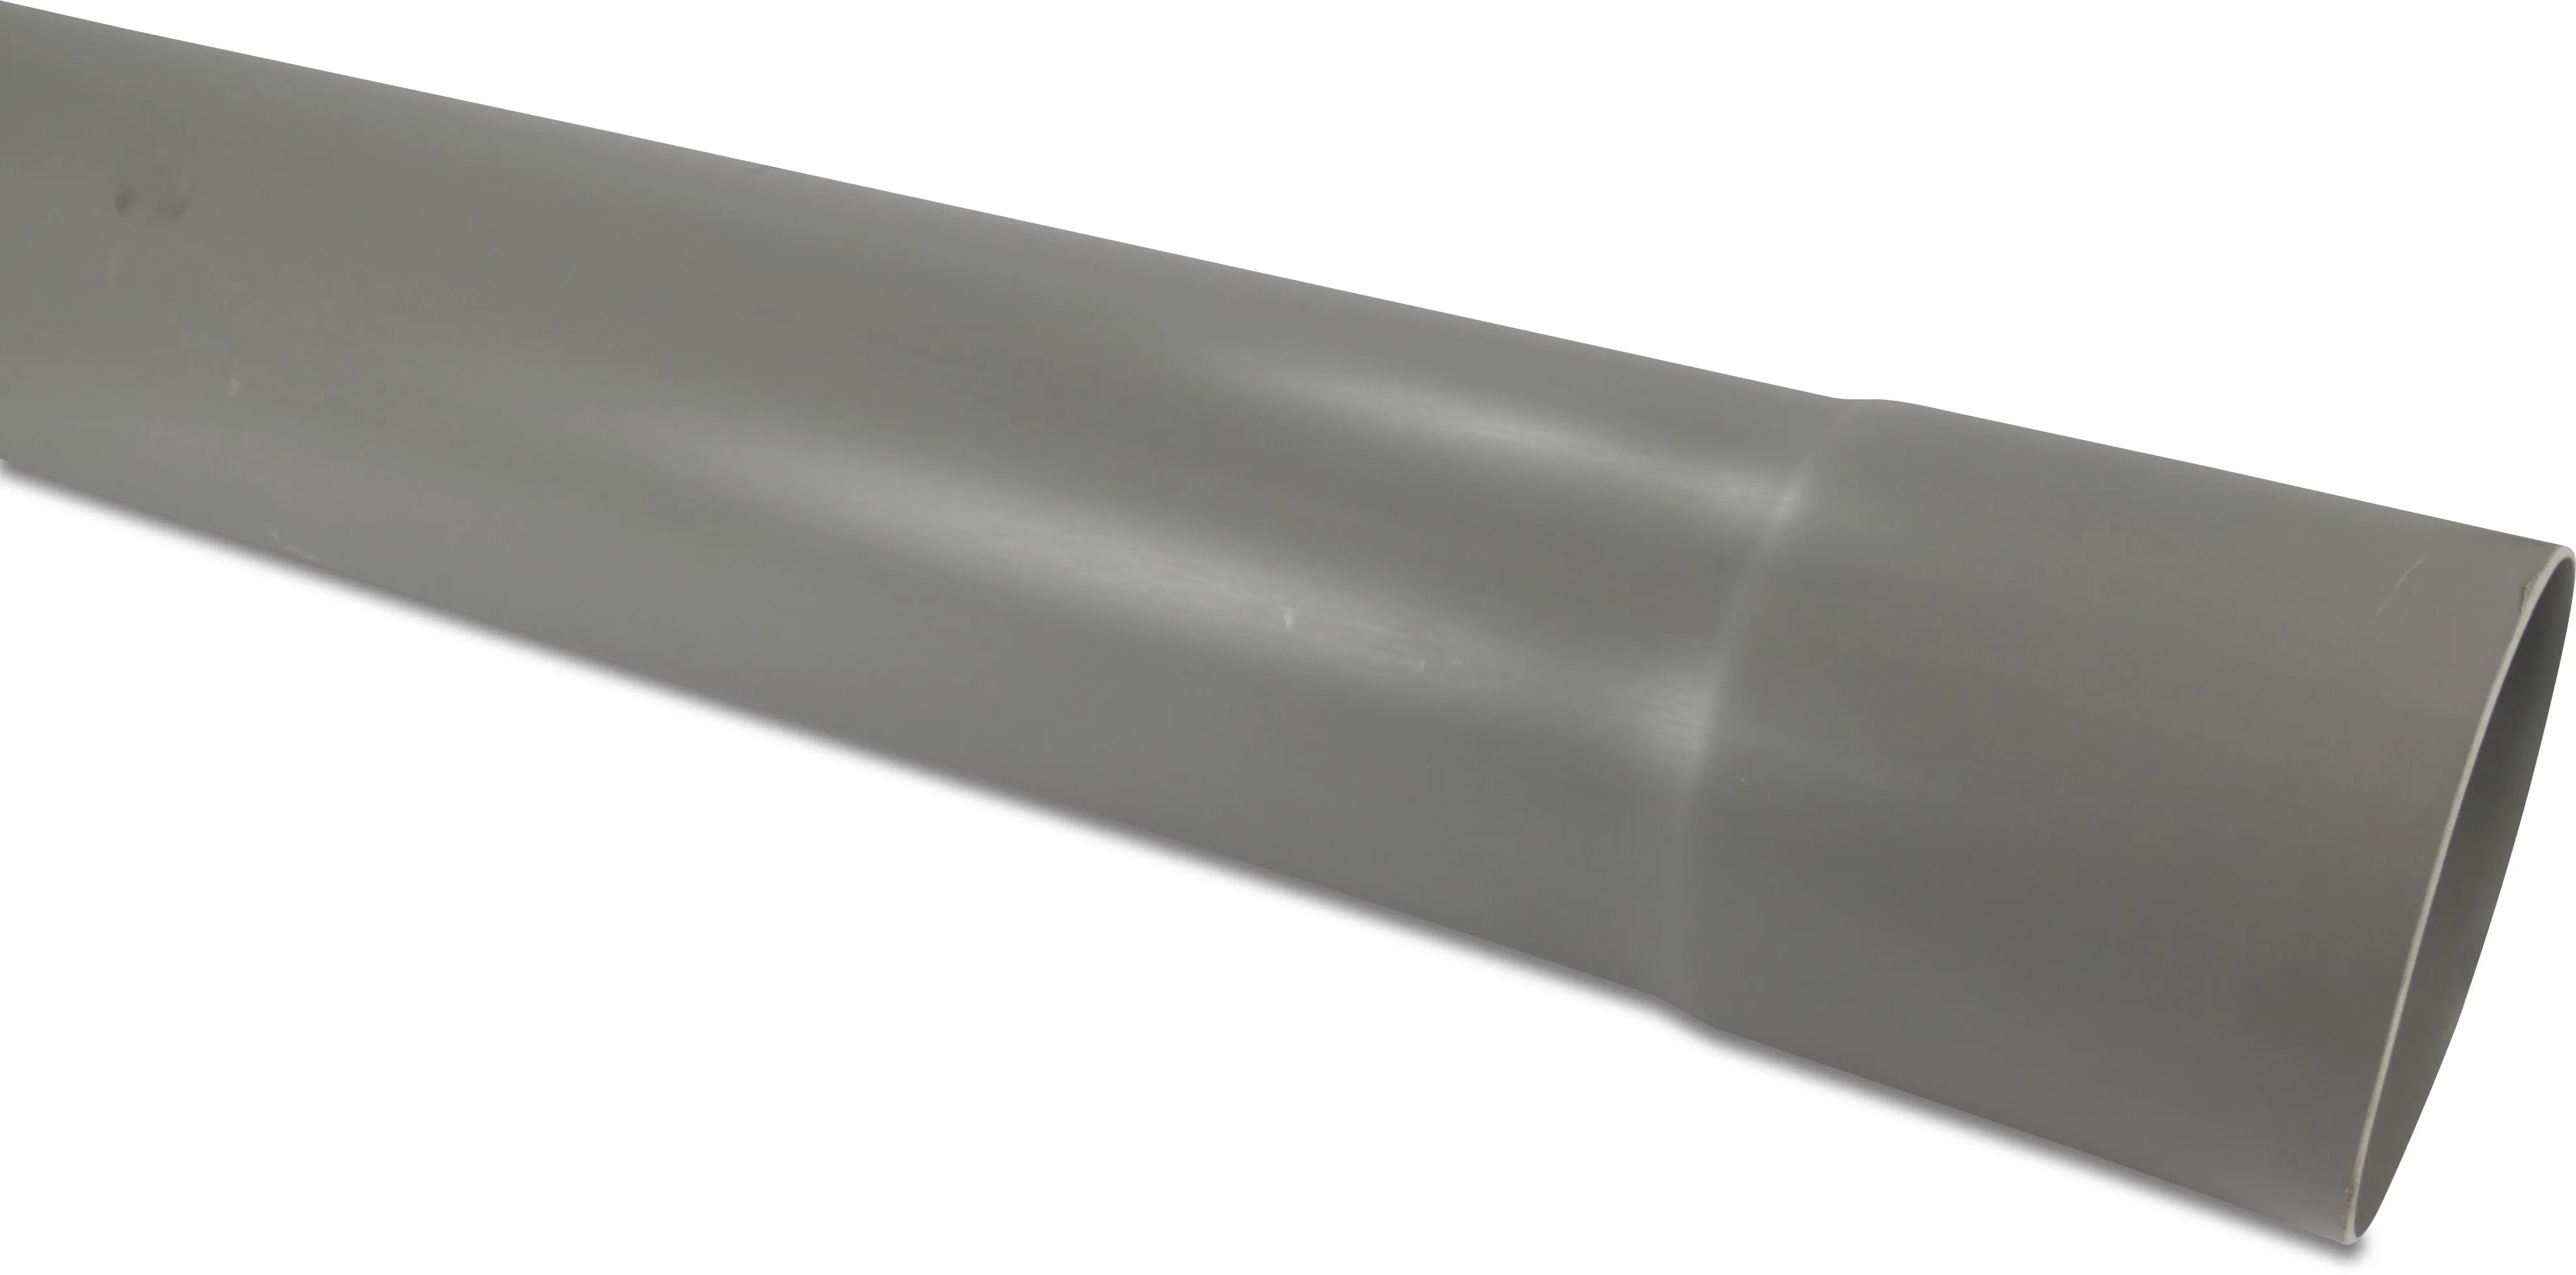 Rura do deszczówki PVC-U 60 mm x 1,5 mm KW x gładkie szary 4m